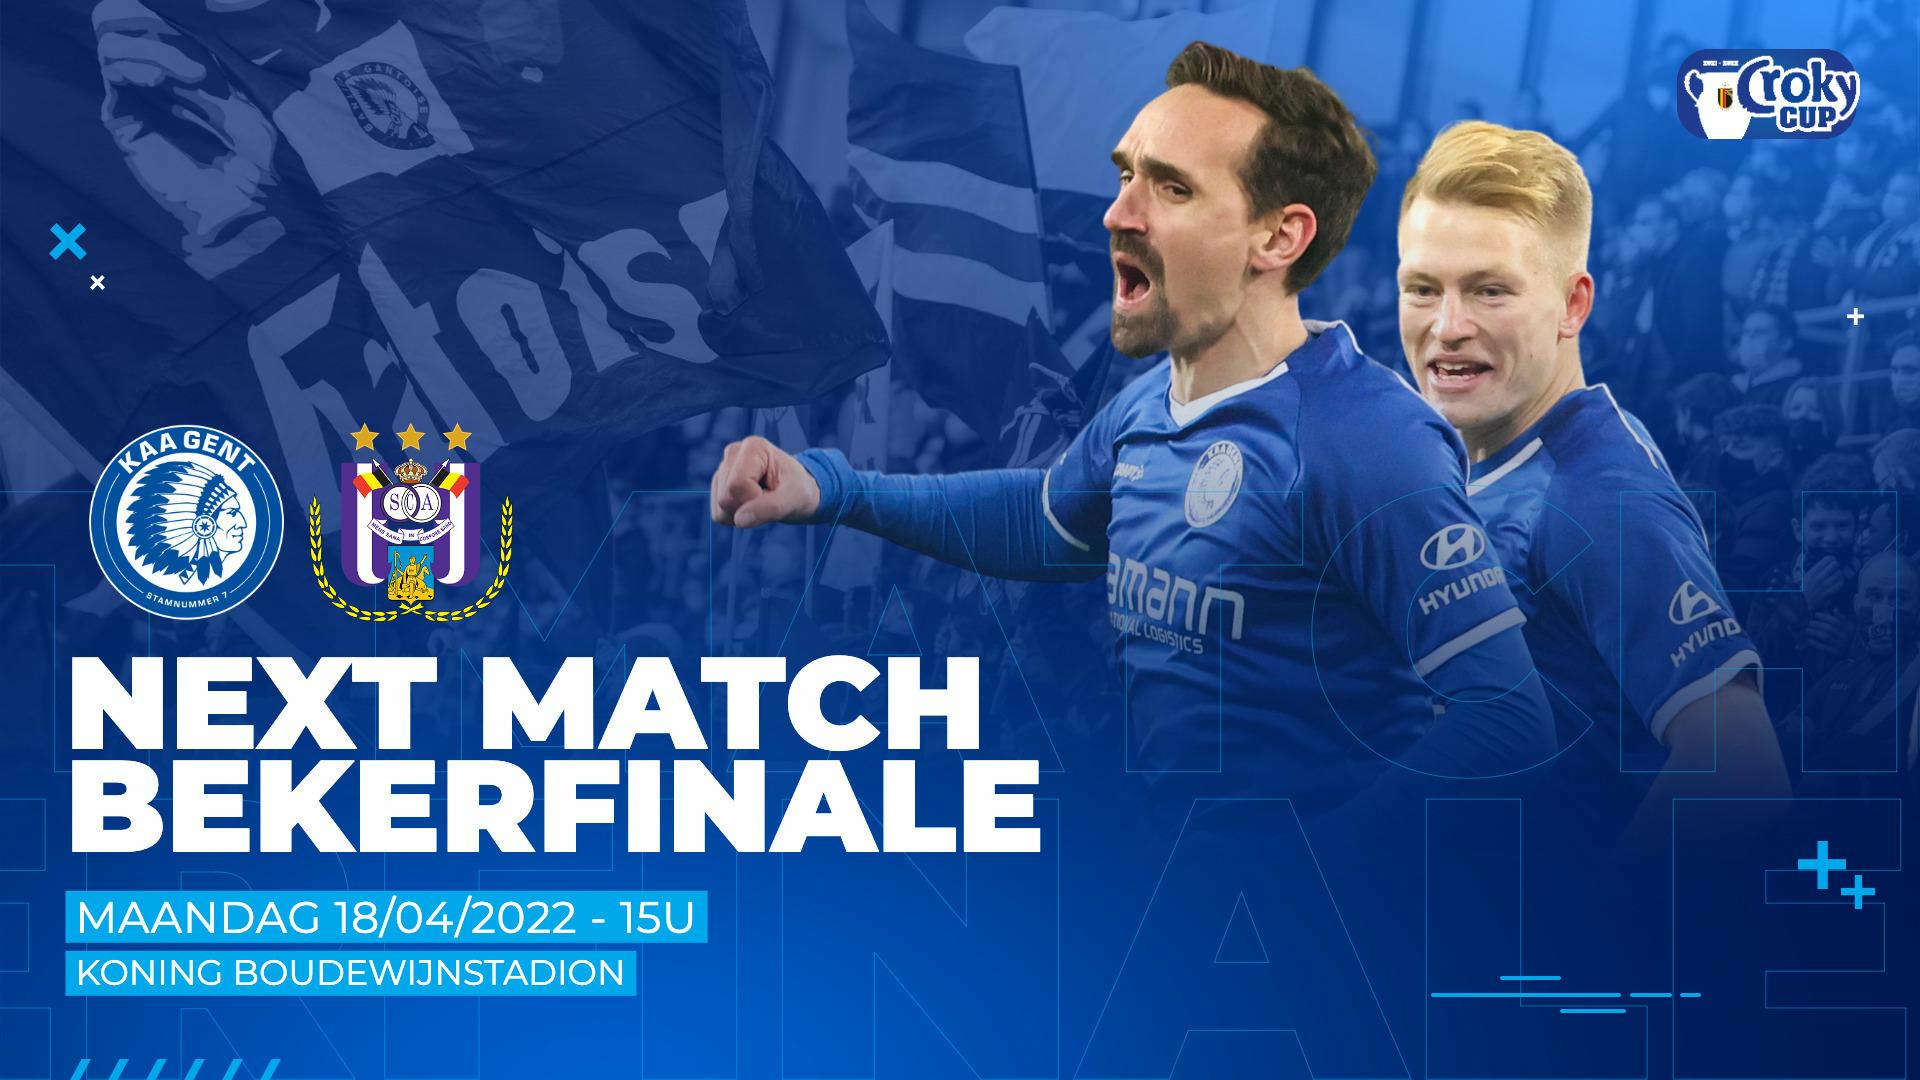 Verstoring Welsprekend Stijg Next Match: Bekerfinale KAA Gent - RSCA | KAA Gent Website